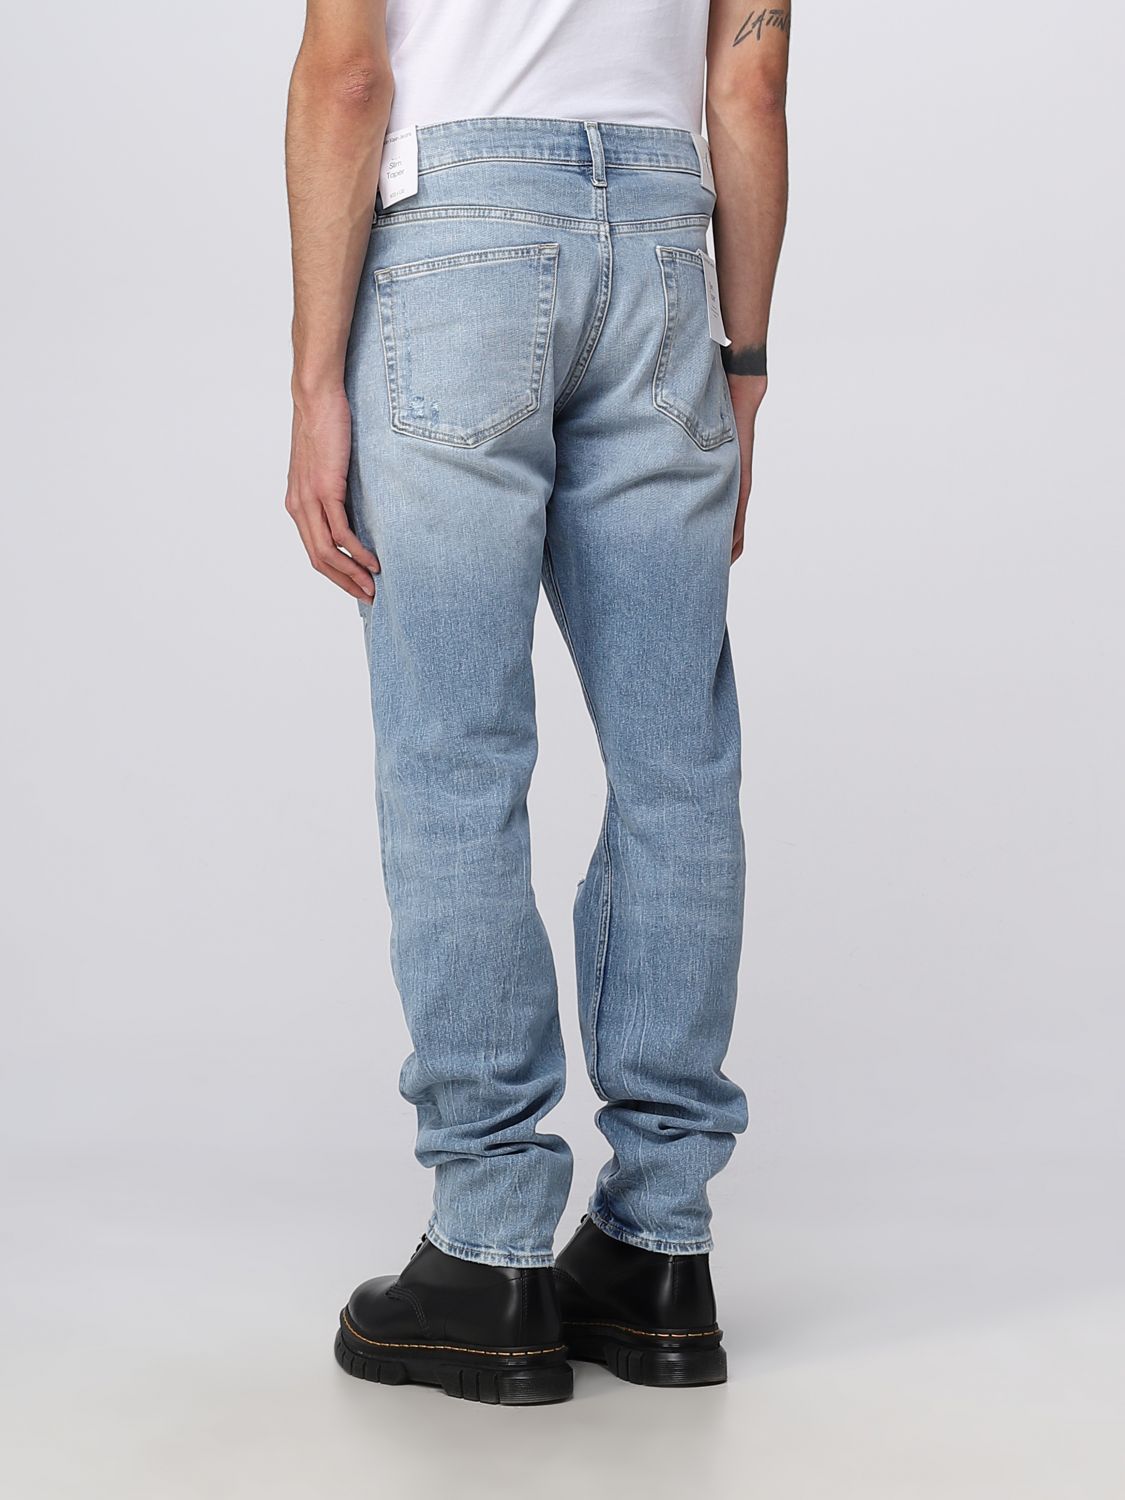 CALVIN KLEIN JEANS: Jeans para hombre, Azul Oscuro | Jeans Calvin Klein Jeans J30J322436 en línea en